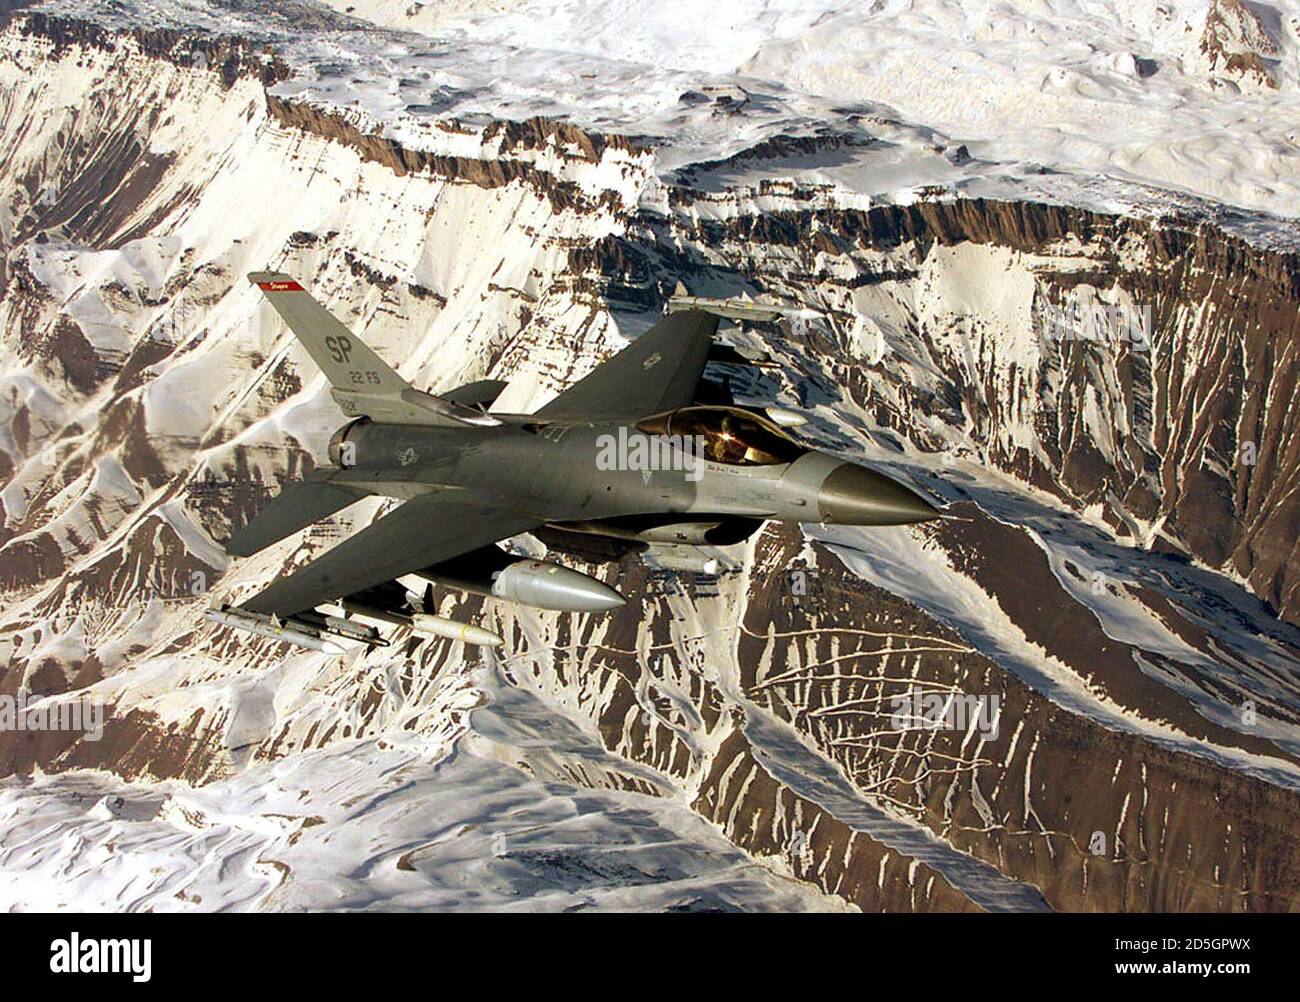 Un faucon F-16 de la US Air Force s'est écrasé dans les montagnes près de  la ville de Batman, dans le sud-est de la Turquie, le 18 juillet 2001. Une  photo de